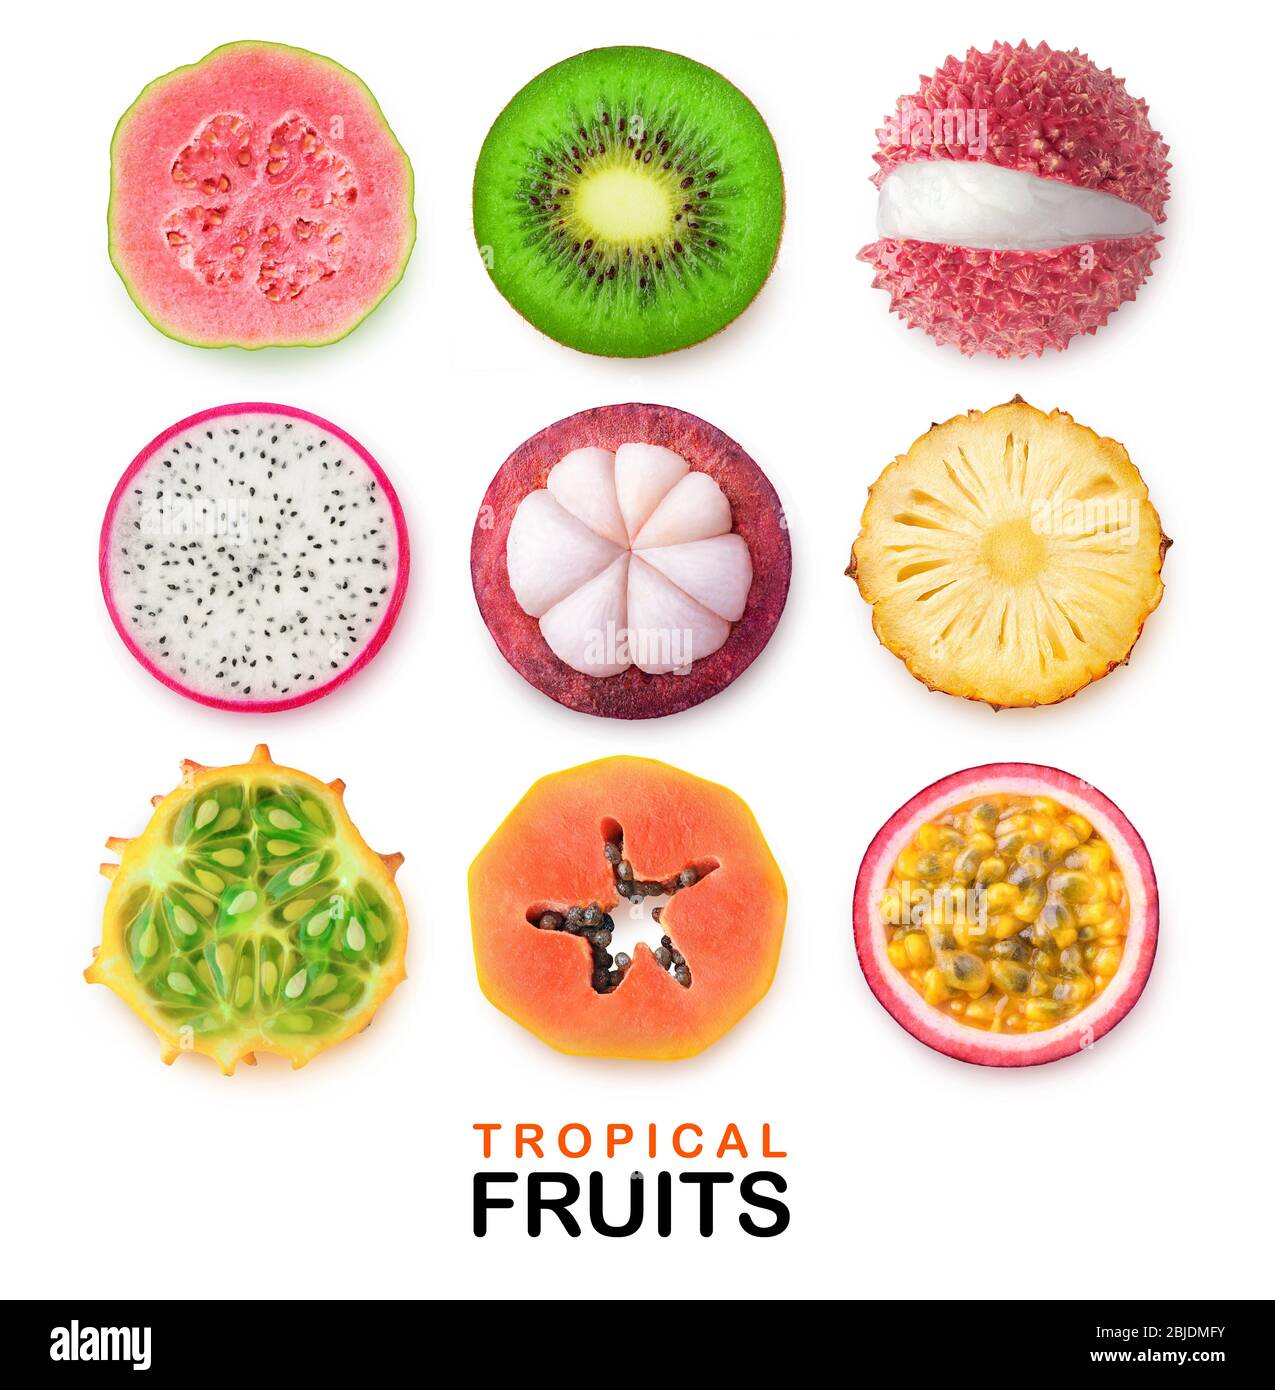 Isolierte tropische Früchte Scheiben. Stücke von Guava, Kiwi, Litschi, Drachenfrucht, Mangostan, Ananas, gehörnte Melone, Papaya und Passionsfrucht isoliert o Stockfoto